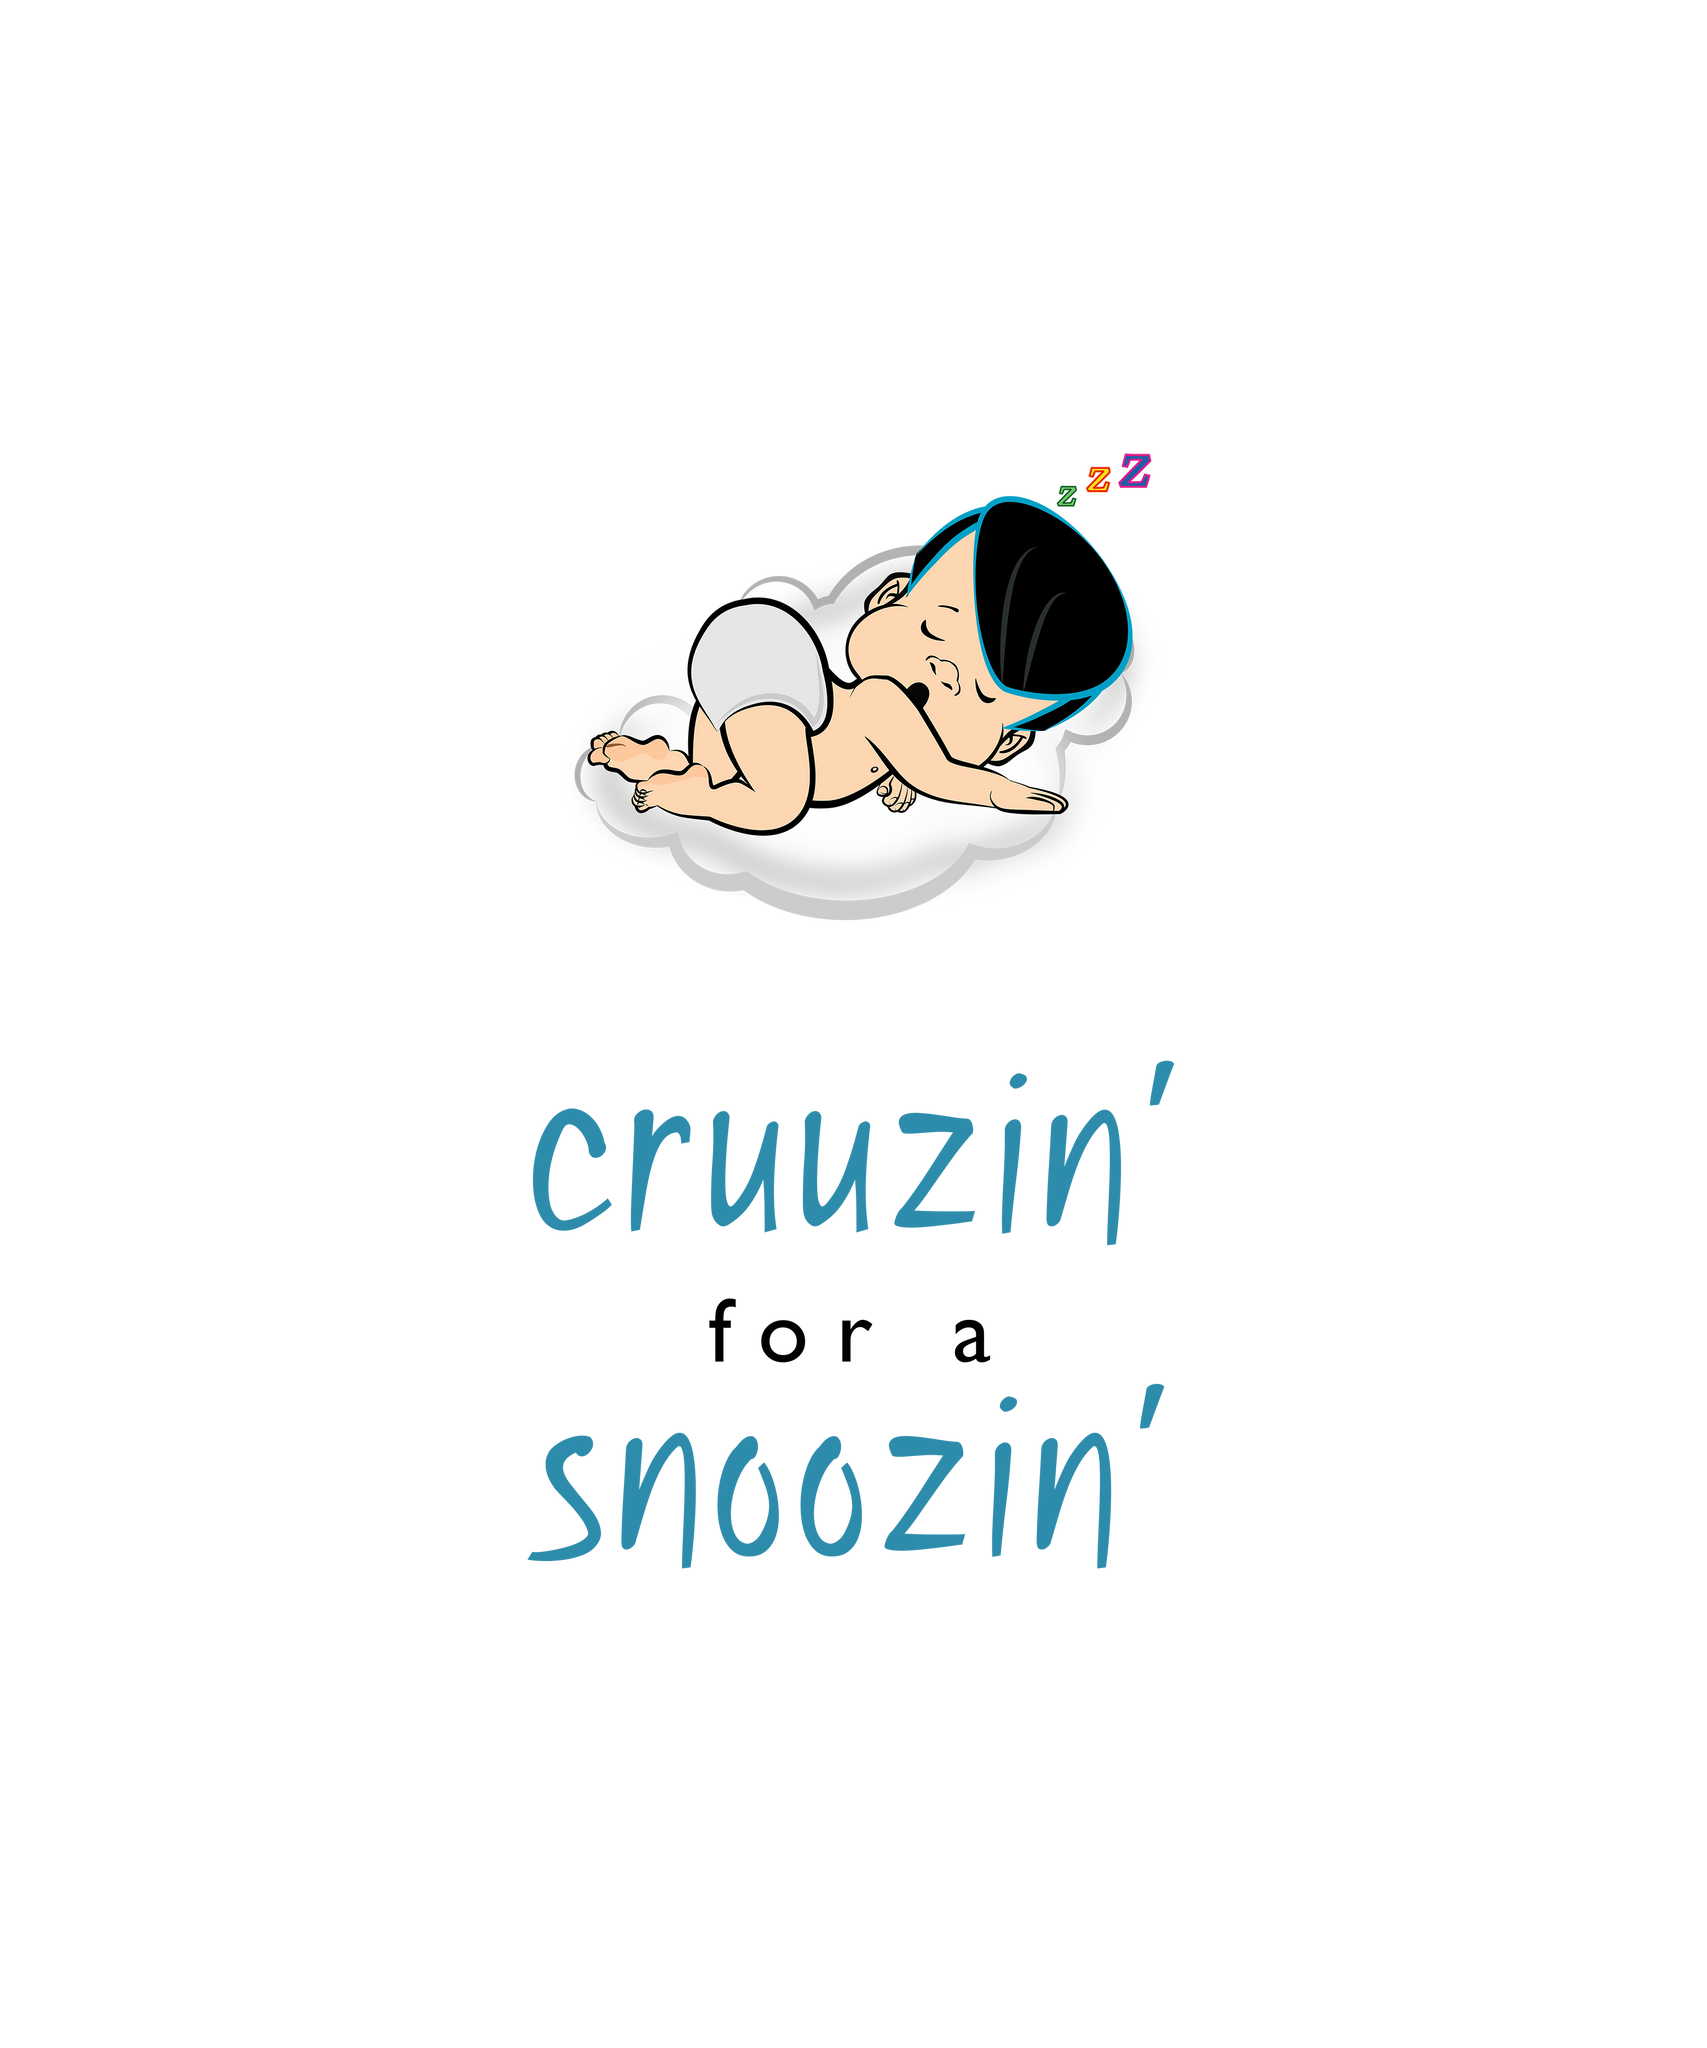 PBCZ0691_cruuzin' for a snoozin'_boy_3